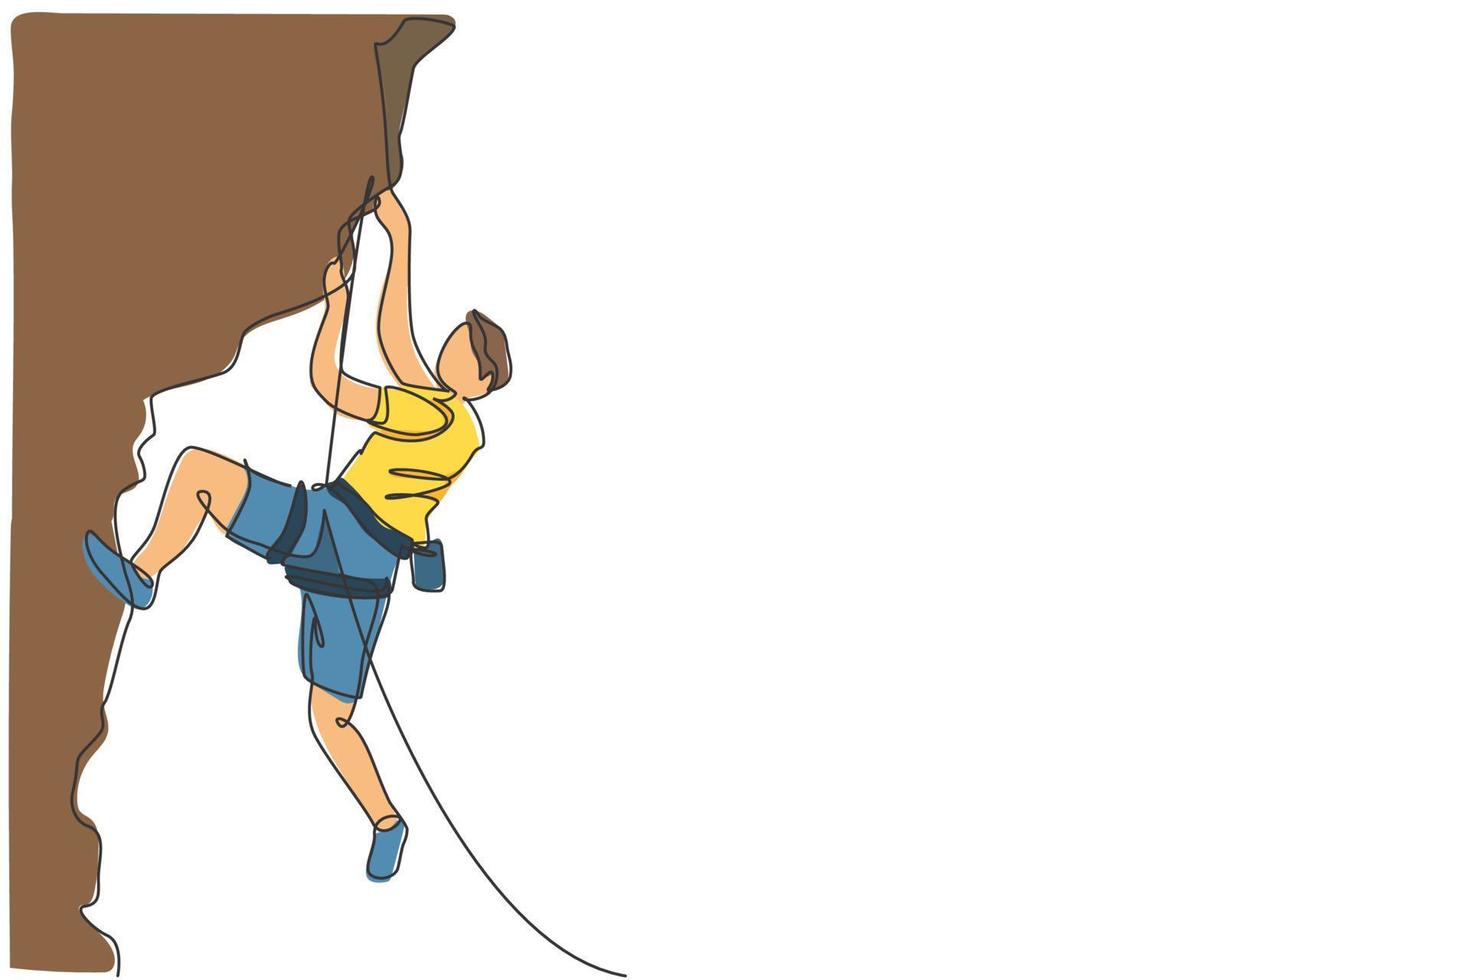 enda kontinuerlig linjeteckning av ung muskulös bergsklättrare man klättrar hängande på bergsgrepp. utomhus aktiv livsstil och bergsklättring koncept. trendiga en rad rita design vektorillustration vektor